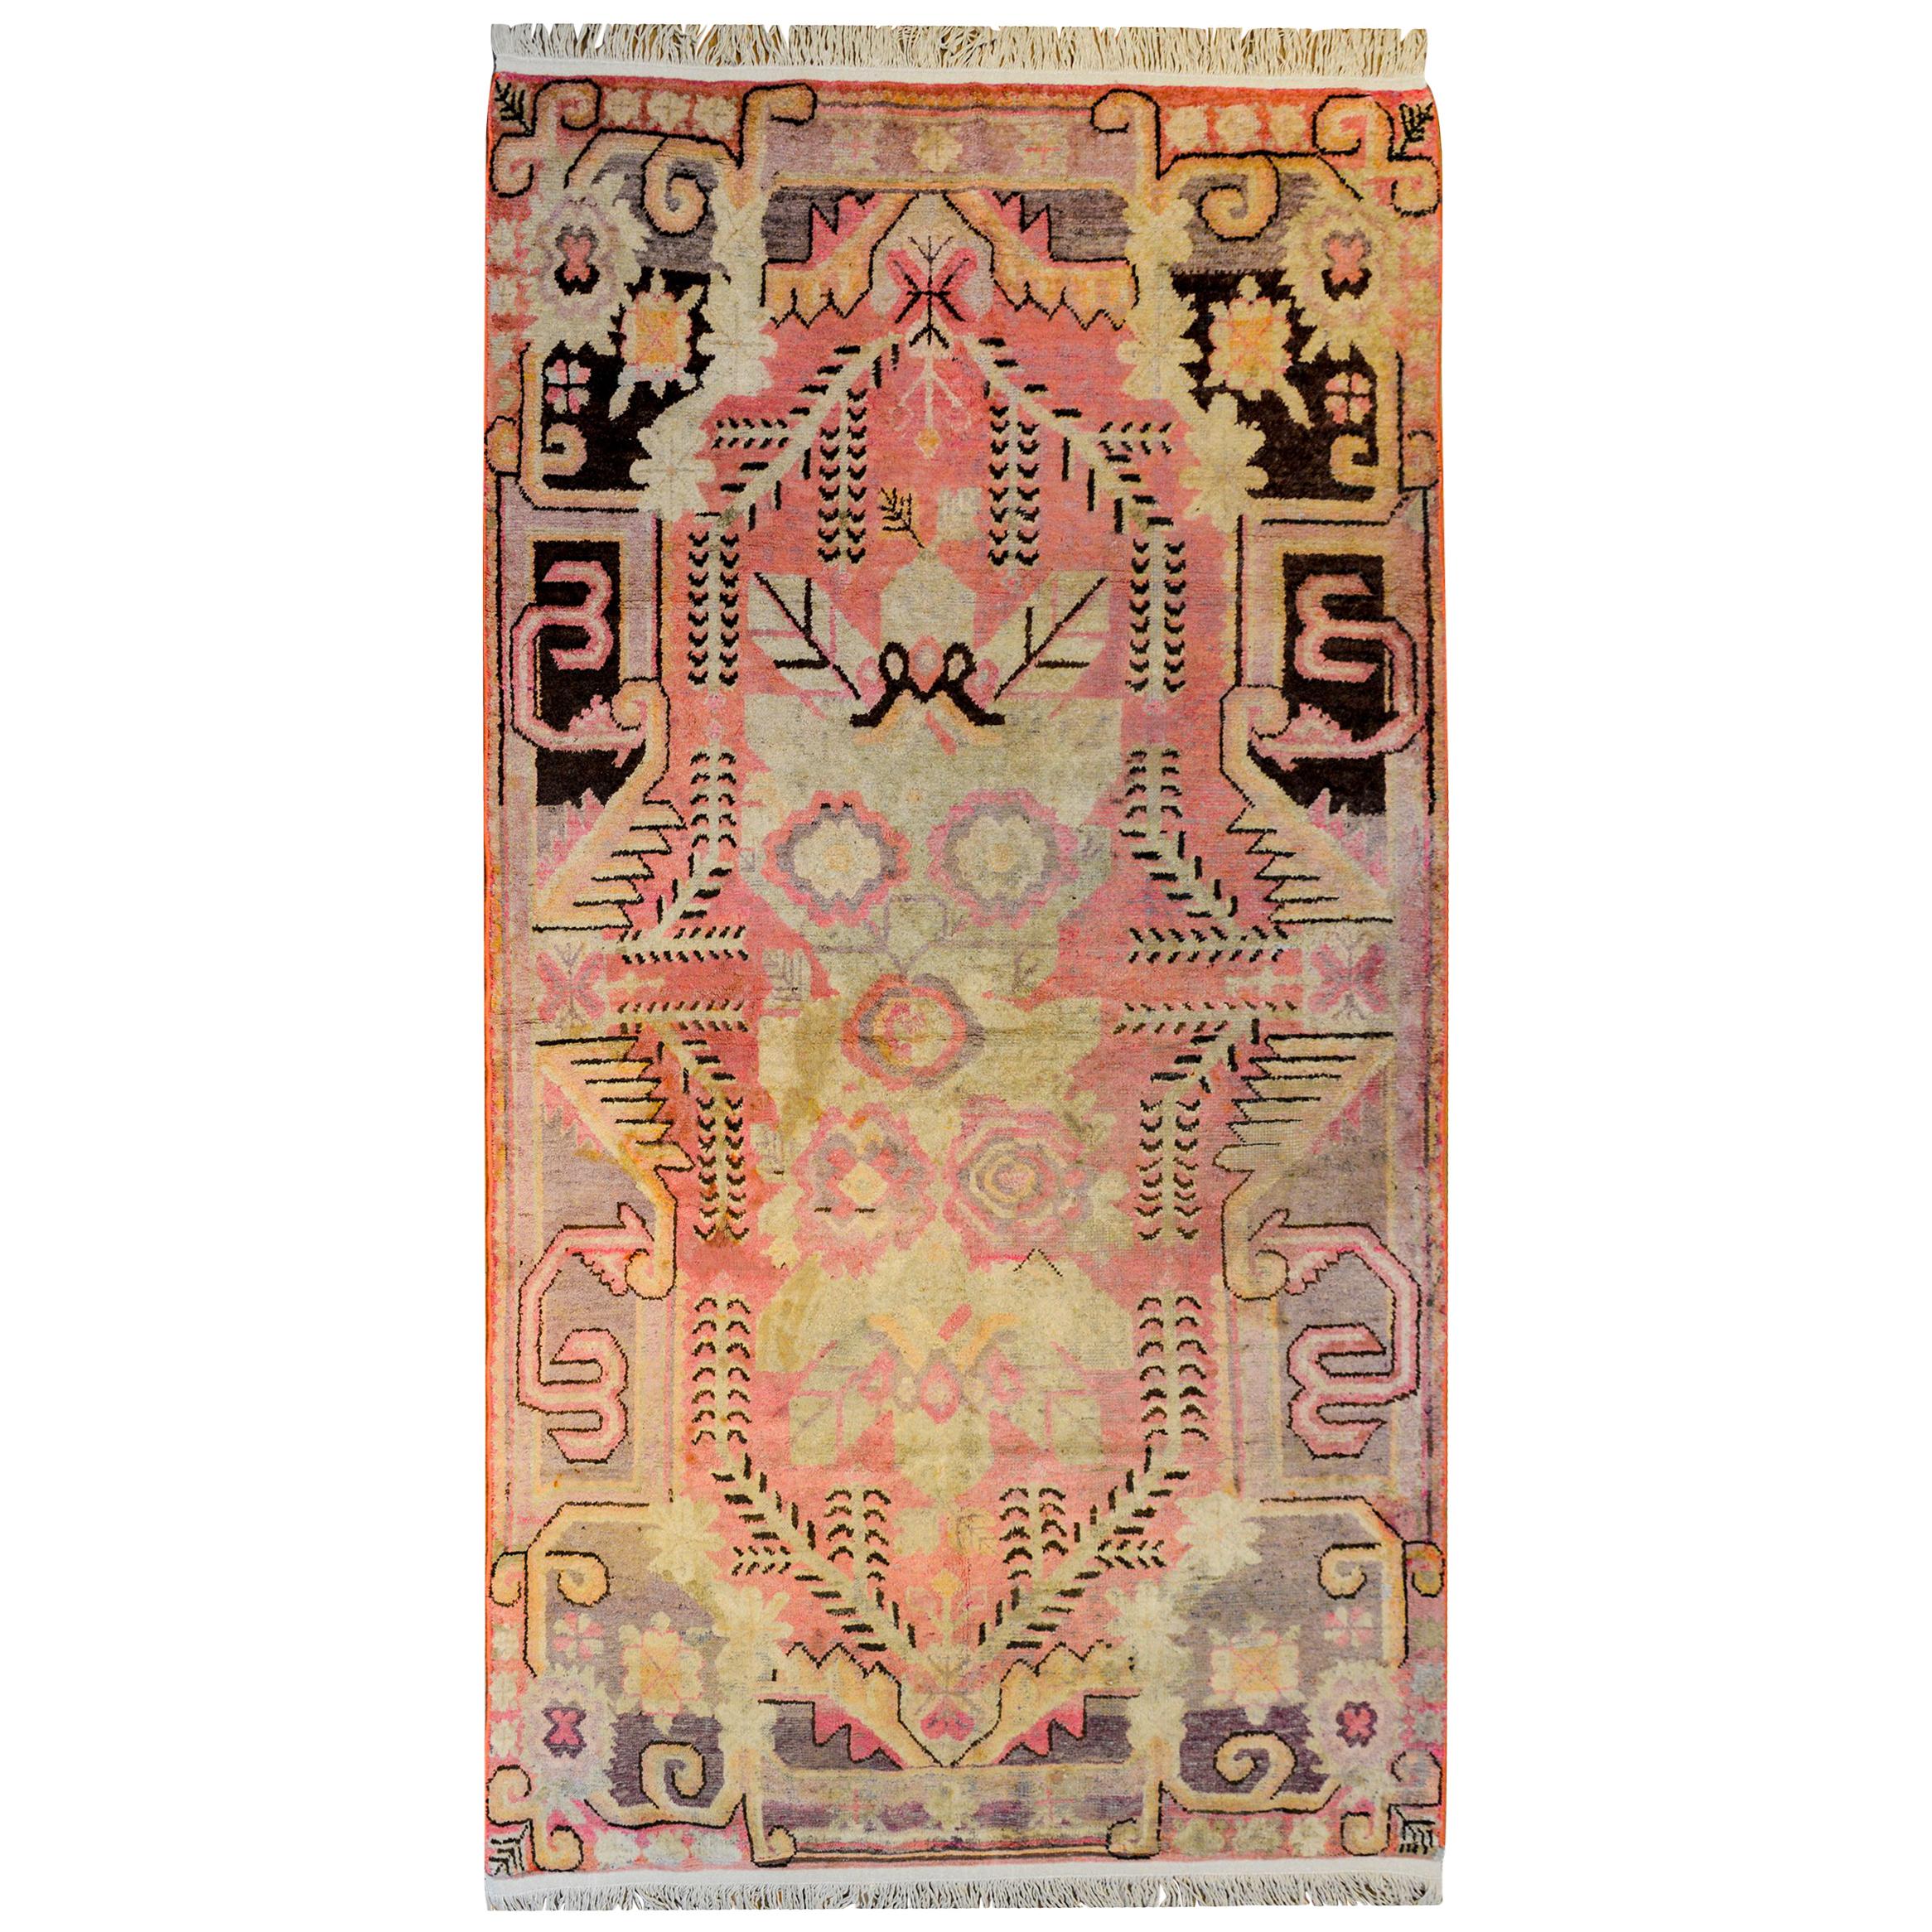 Merveilleux tapis Khotan du début du XXe siècle